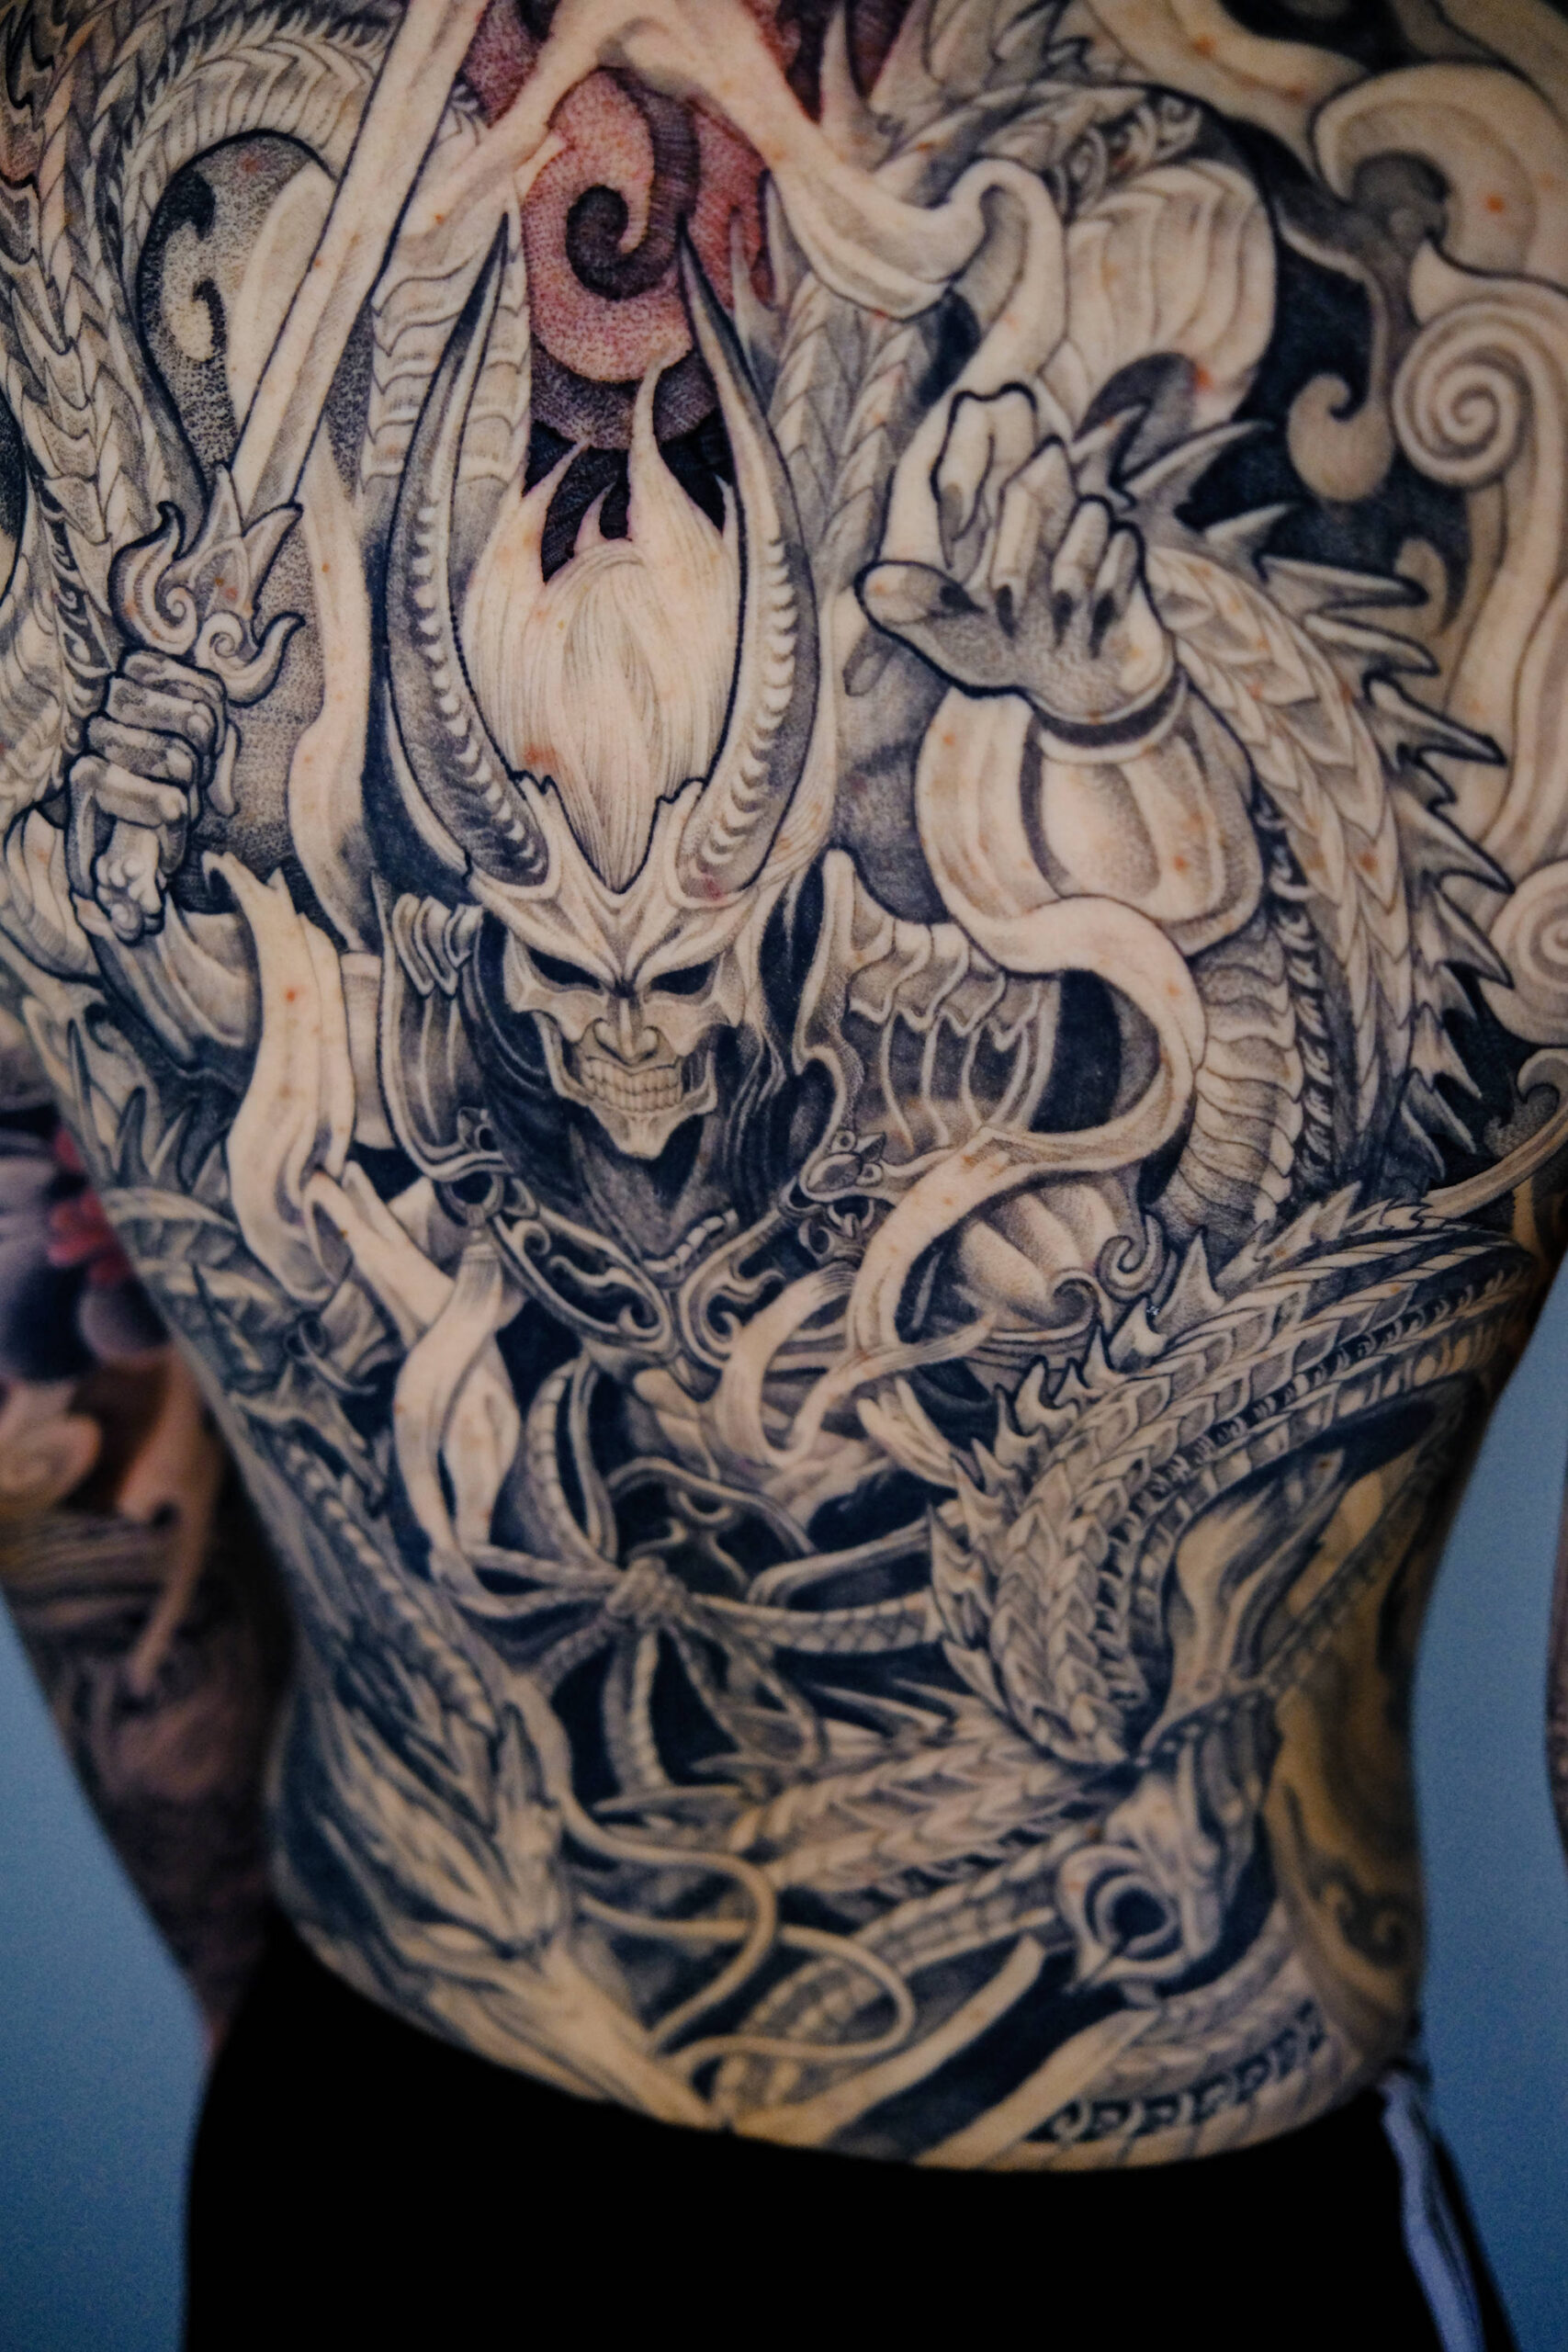 A black and gray tattoo of the Japanese thunder god Raijin